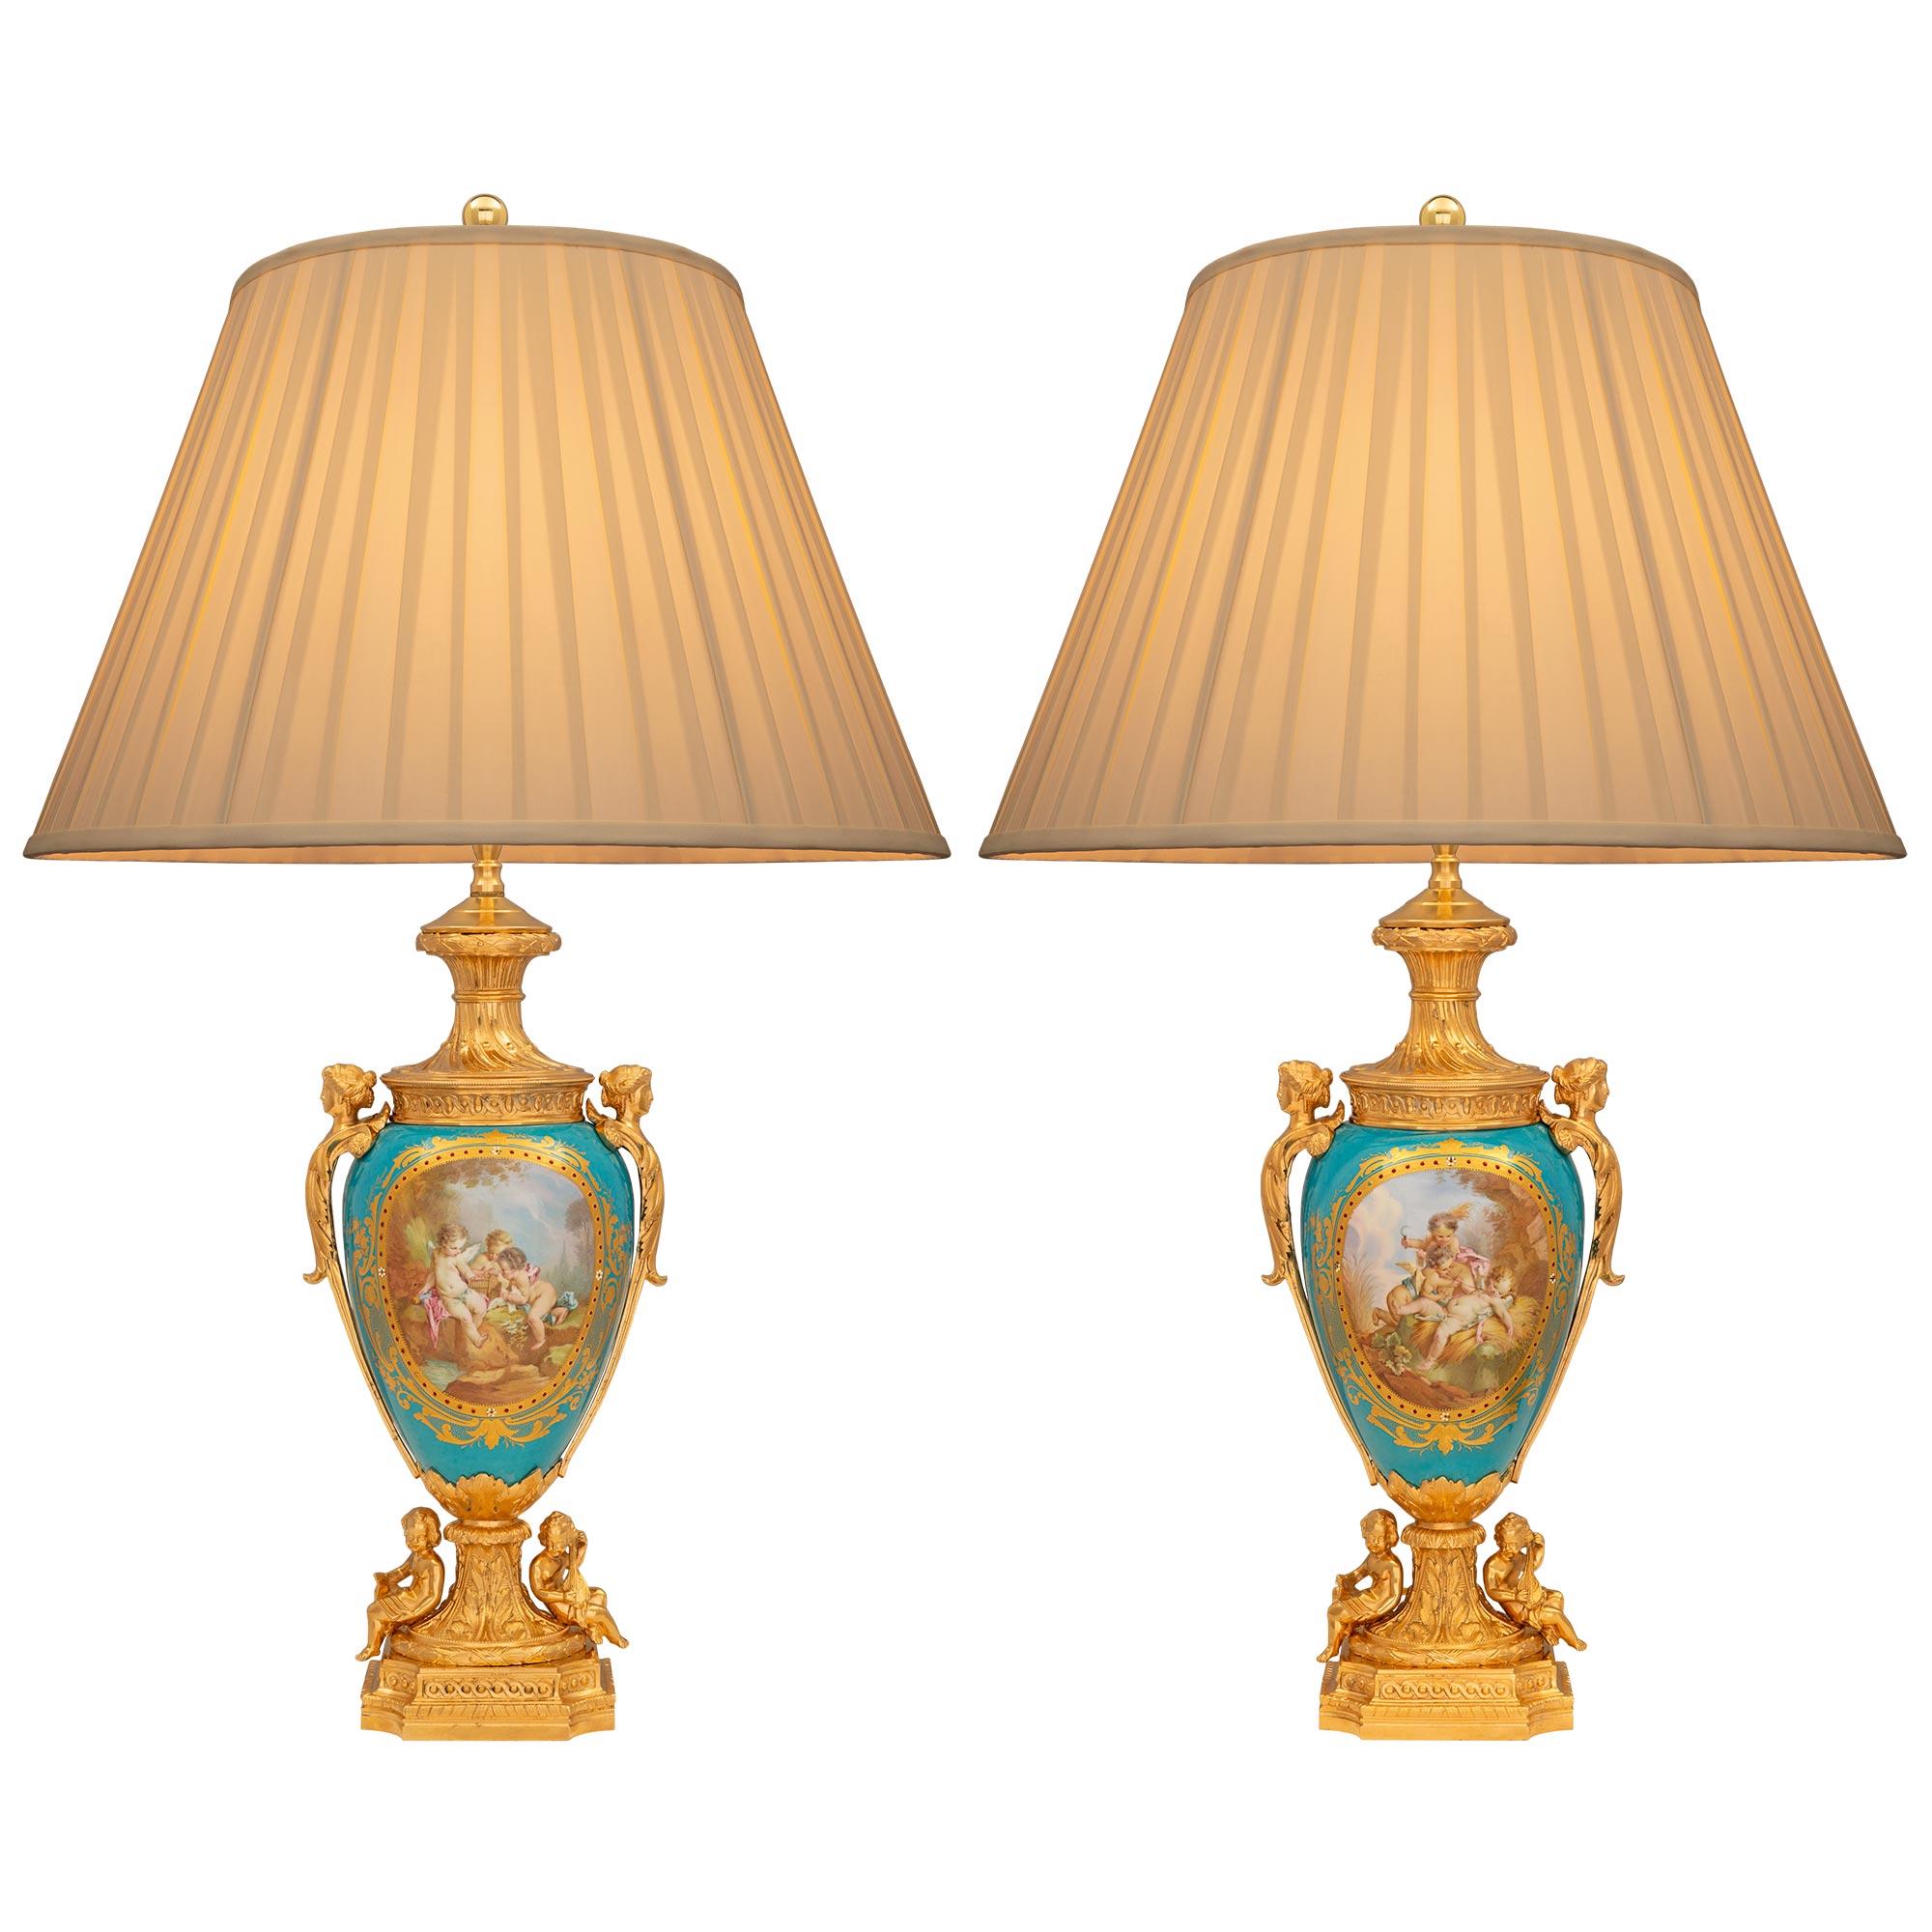 Une belle et très élégante paire de lampes françaises du 19ème siècle en bronze doré et porcelaine de Sèvres. Chaque lampe est surélevée par une remarquable base carrée en bronze doré, avec de fins motifs marbrés en gradins, des coins concaves et de